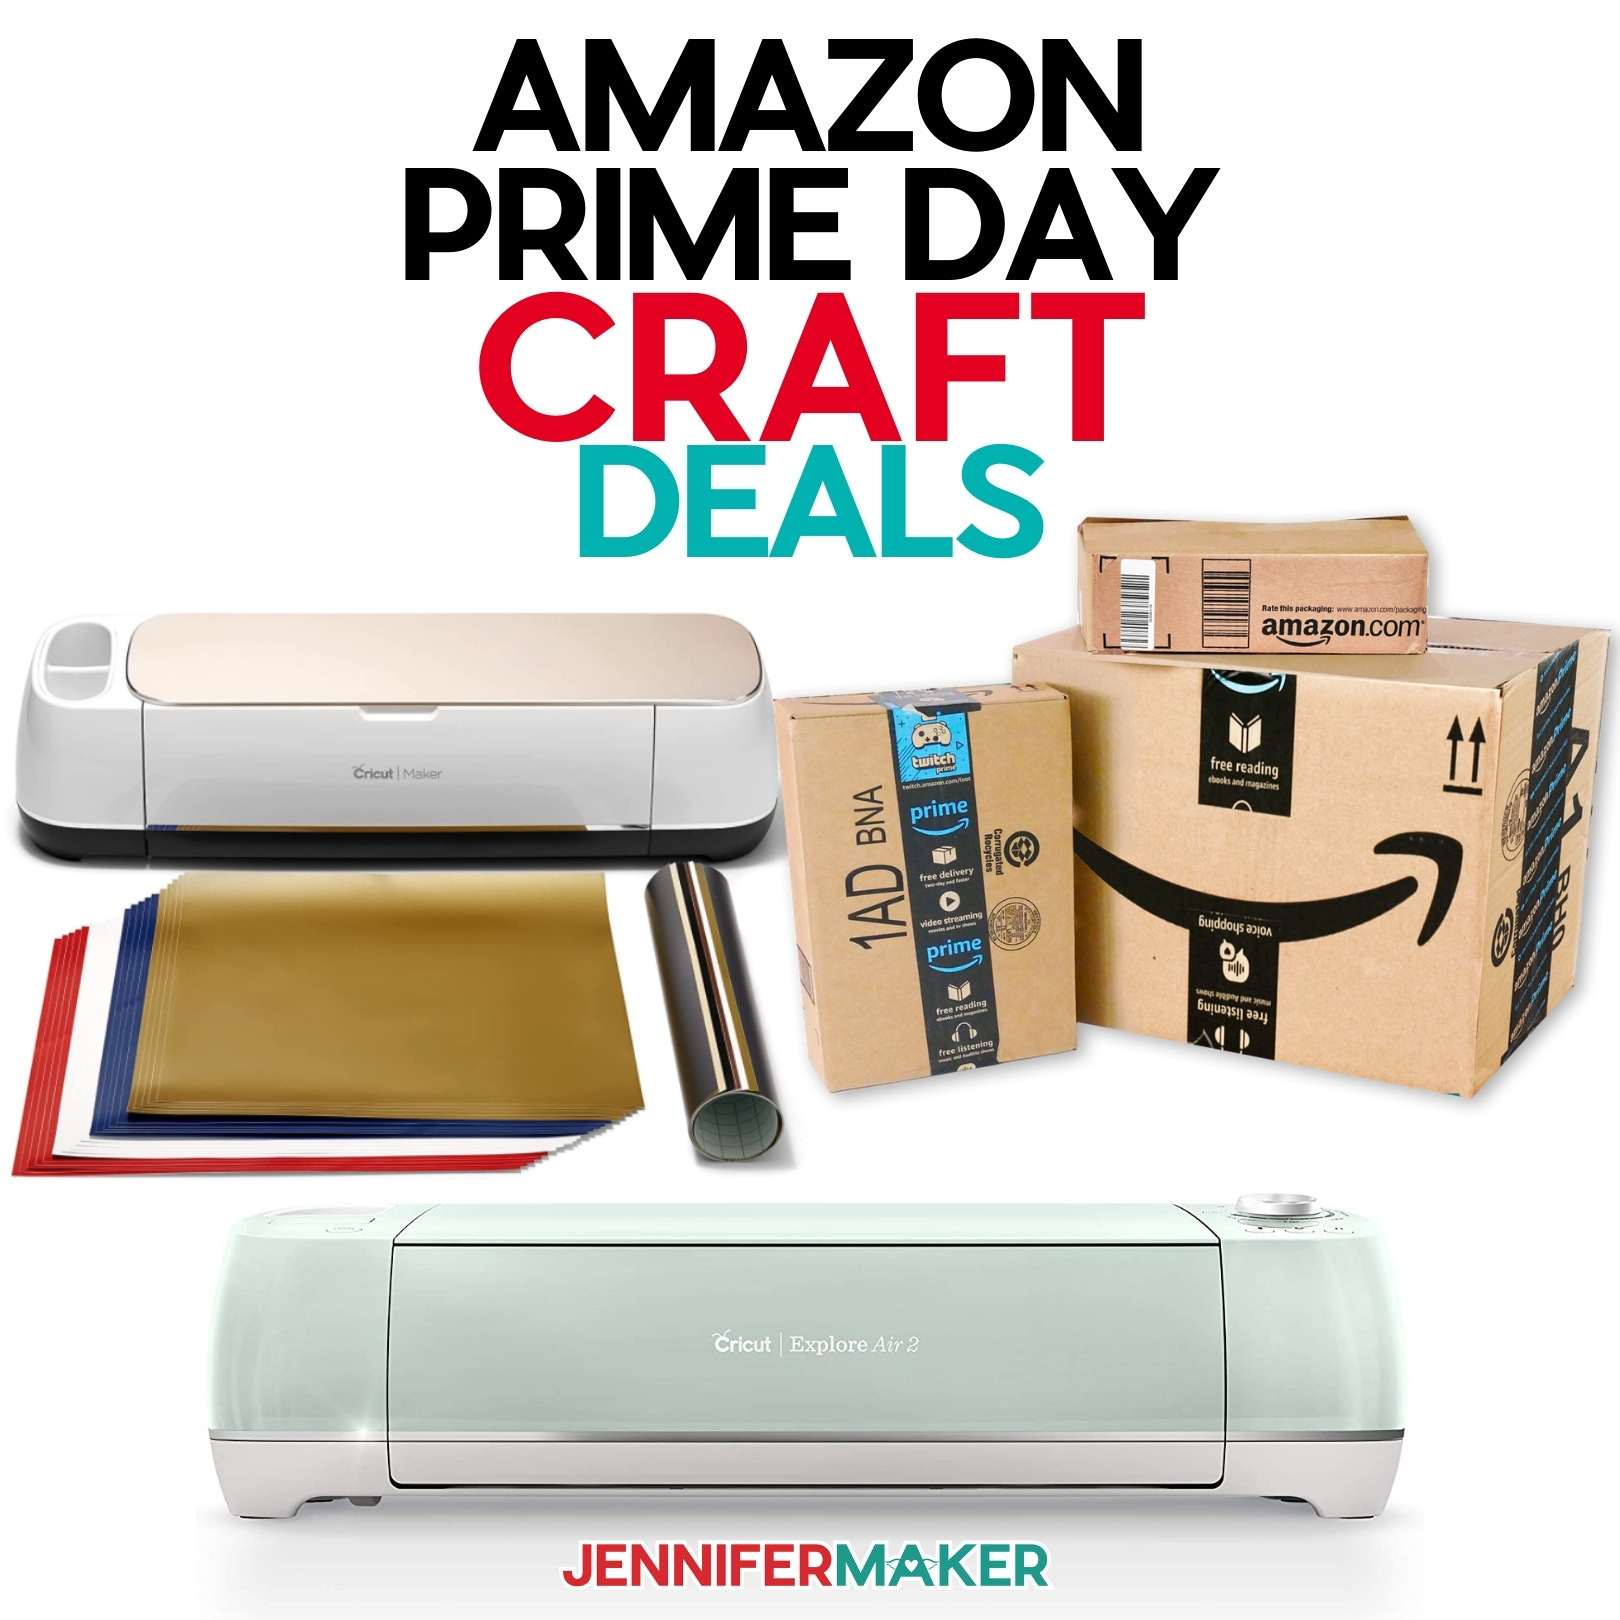 Amazon Prime Craft Deals including Cricut Explore Air 2, Cricut Maker, and more!